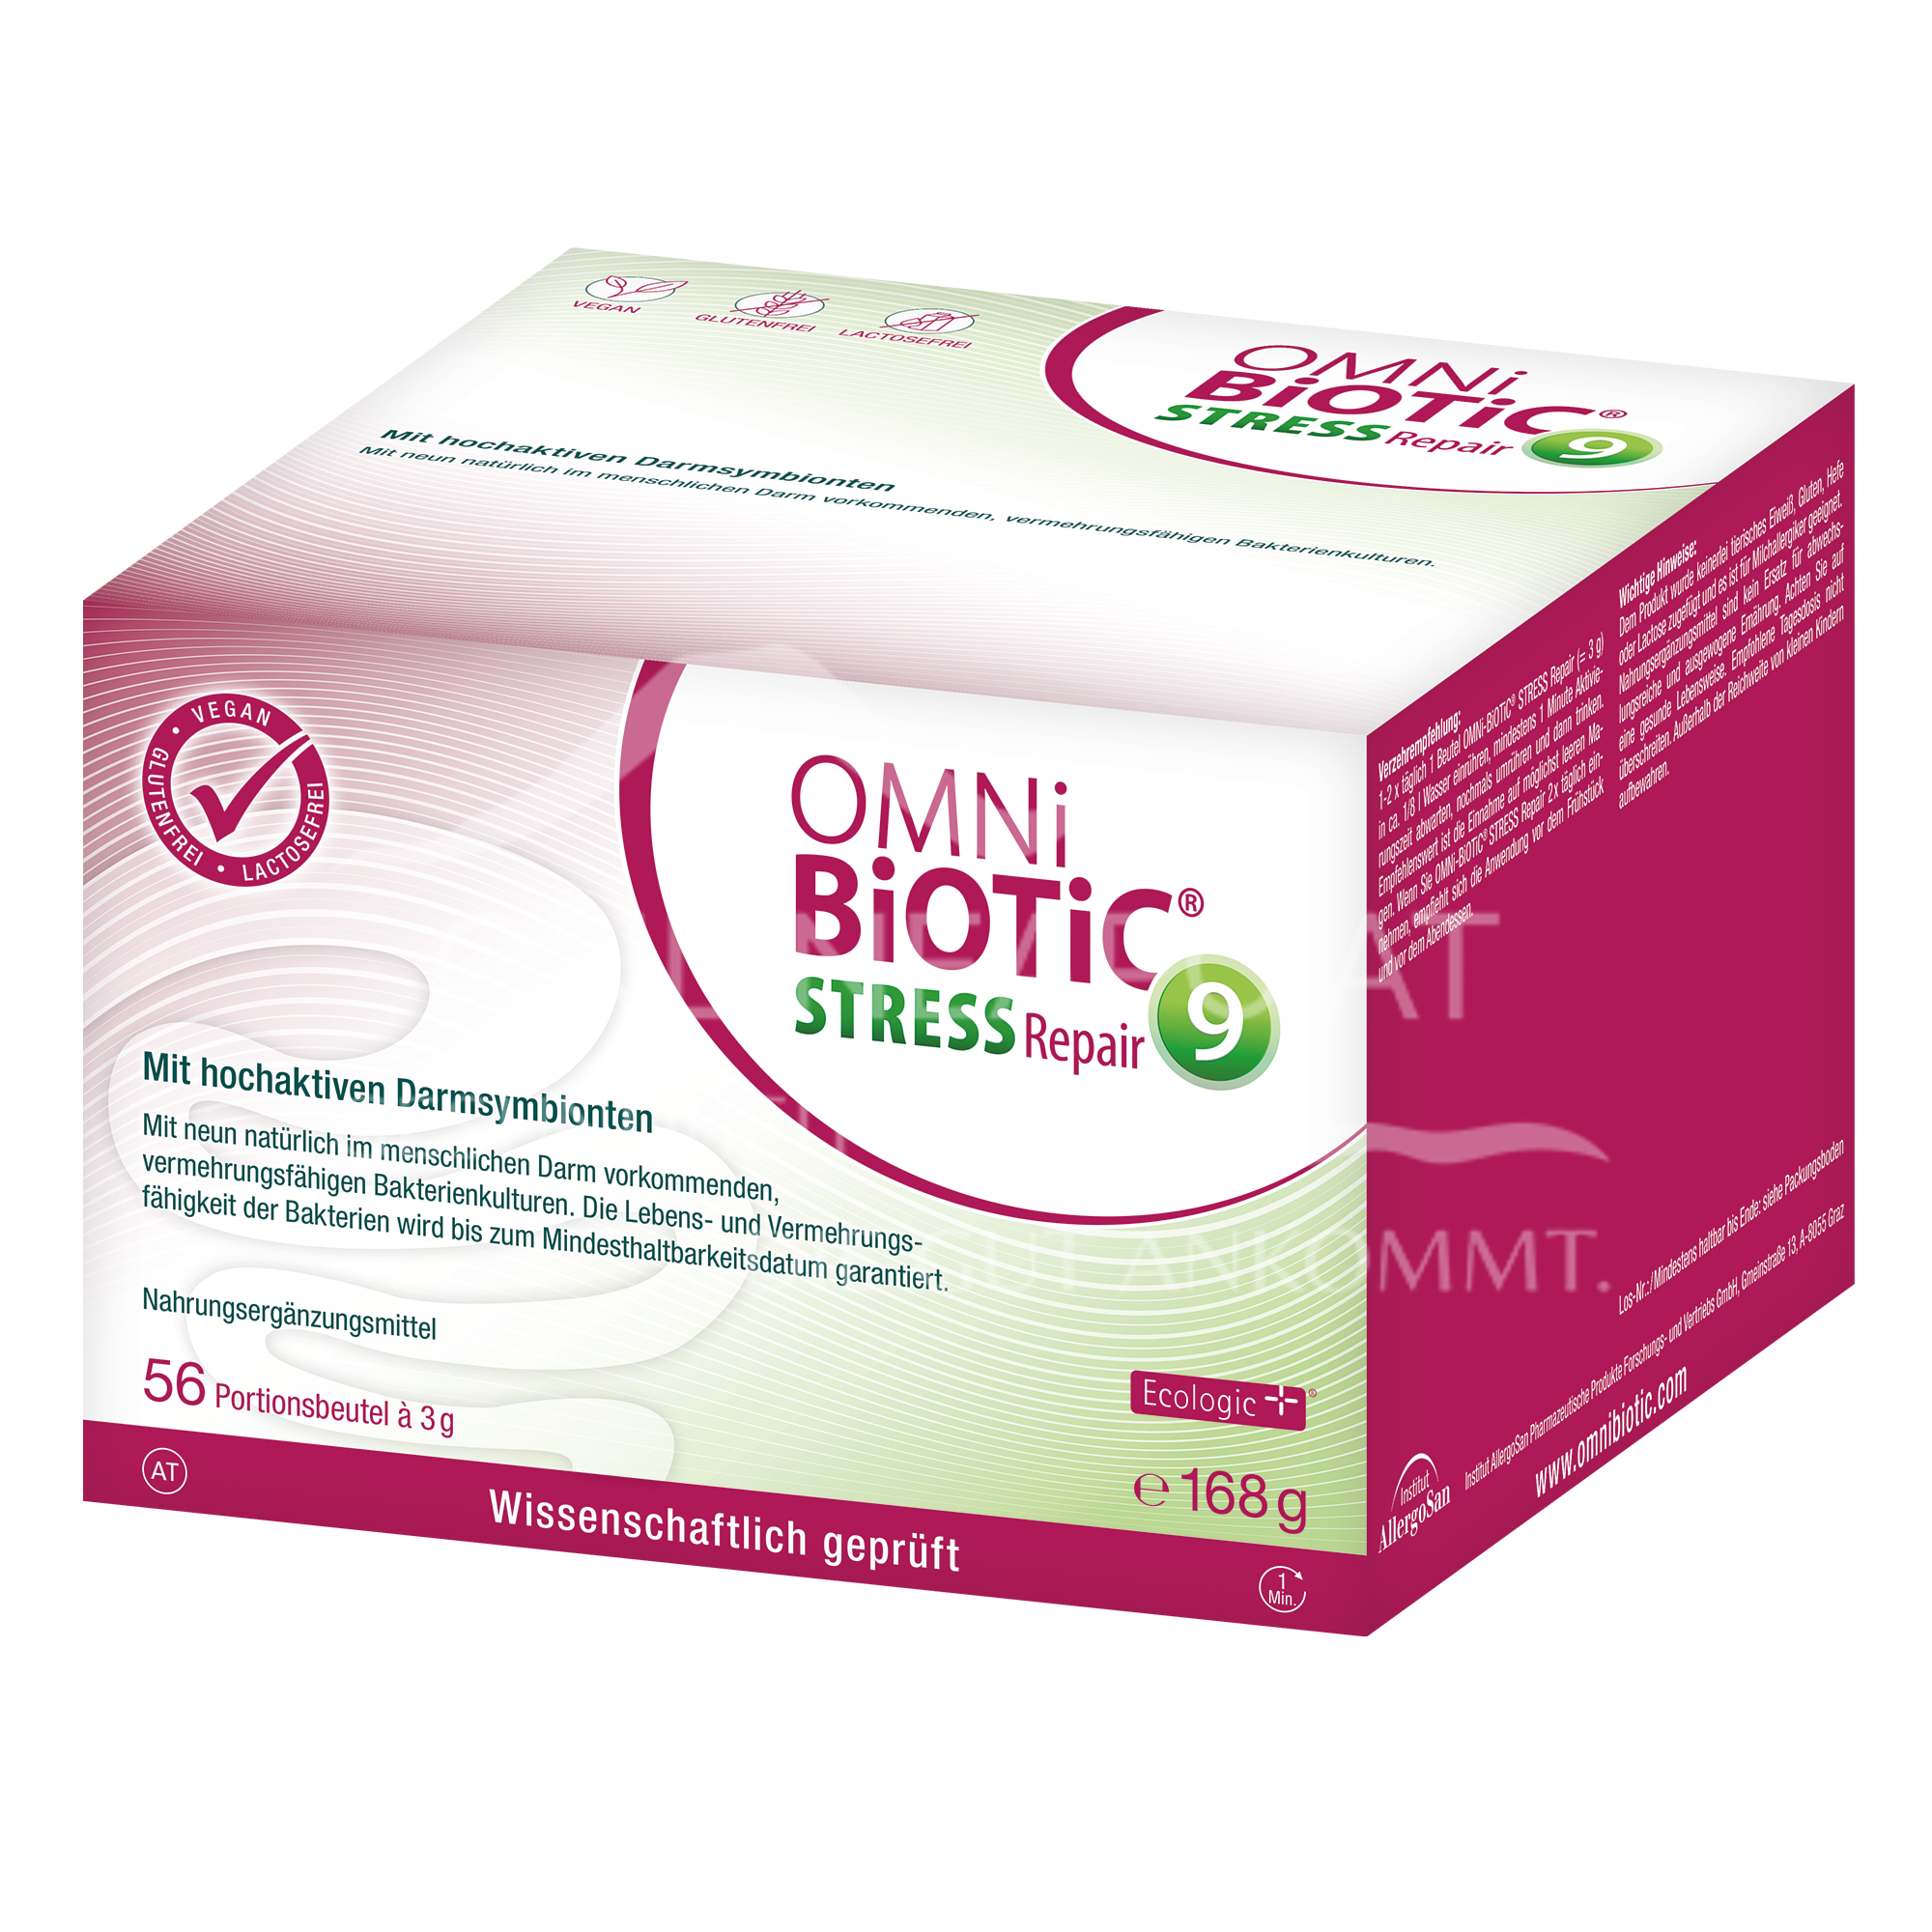 OMNi-BiOTiC® STRESS Repair Sachets